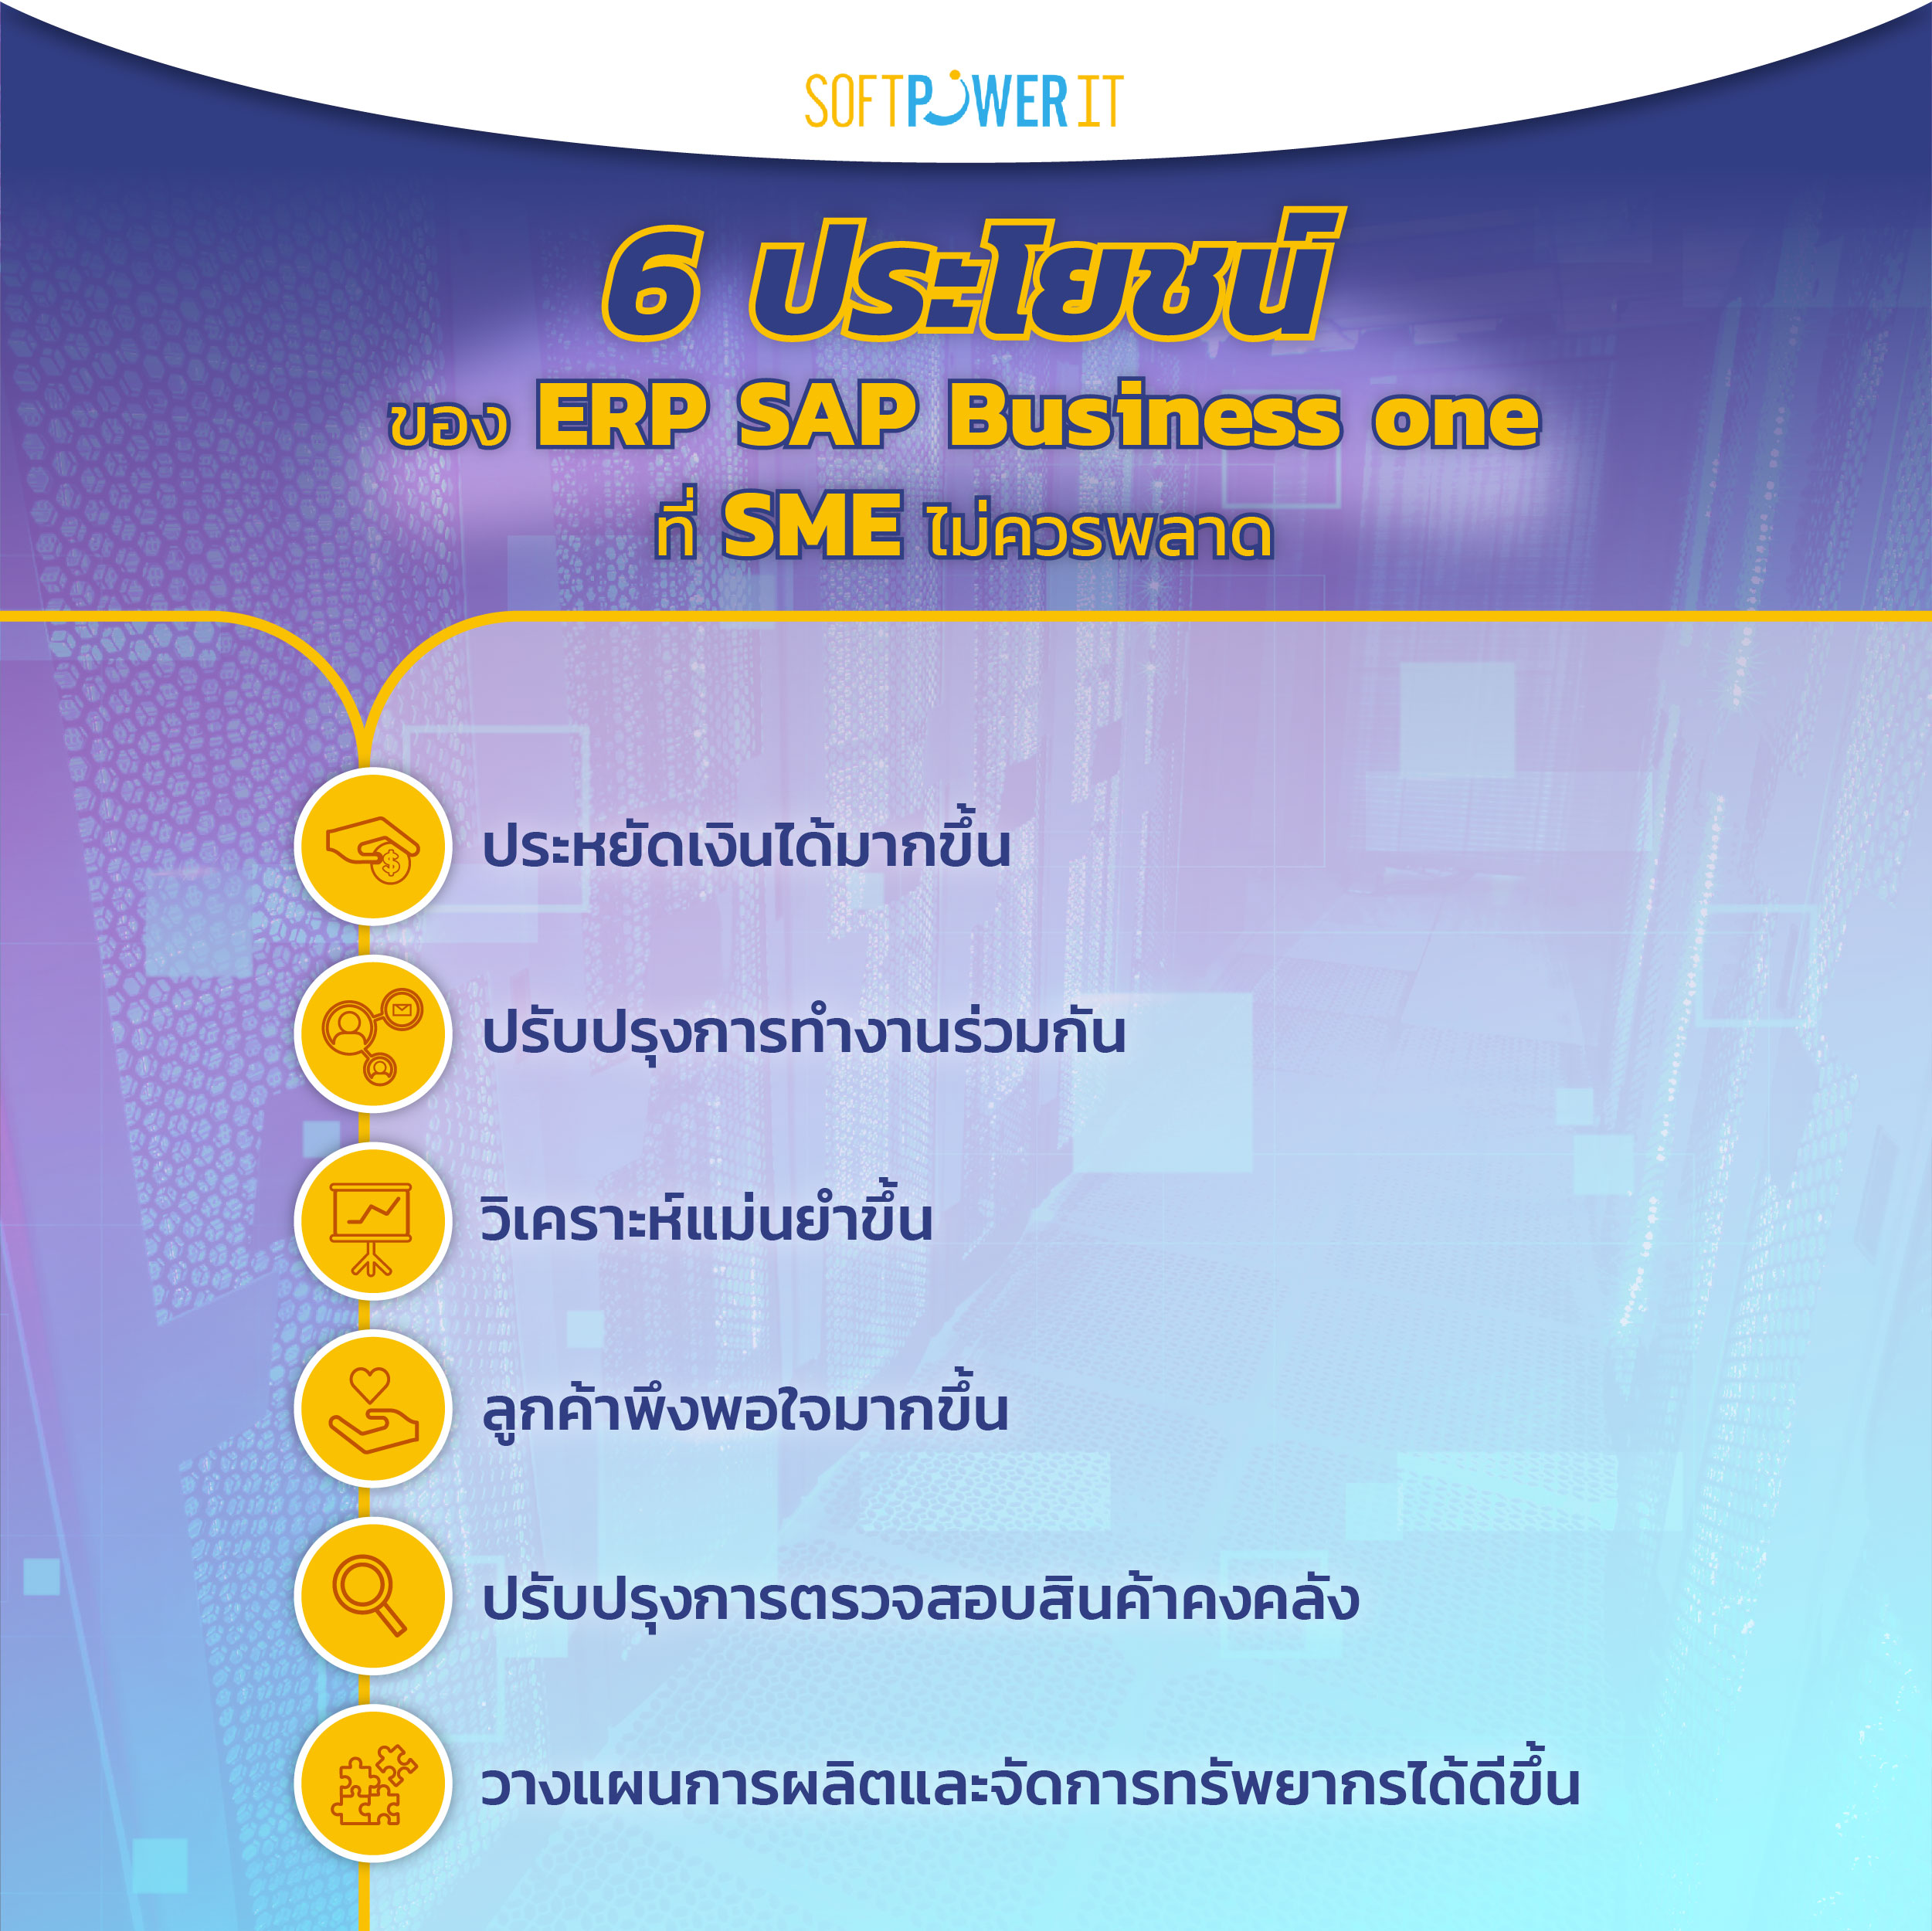 6 ประโยชน์ ของ ERP SAP Business One ที่ SME ไม่ควรพลาด